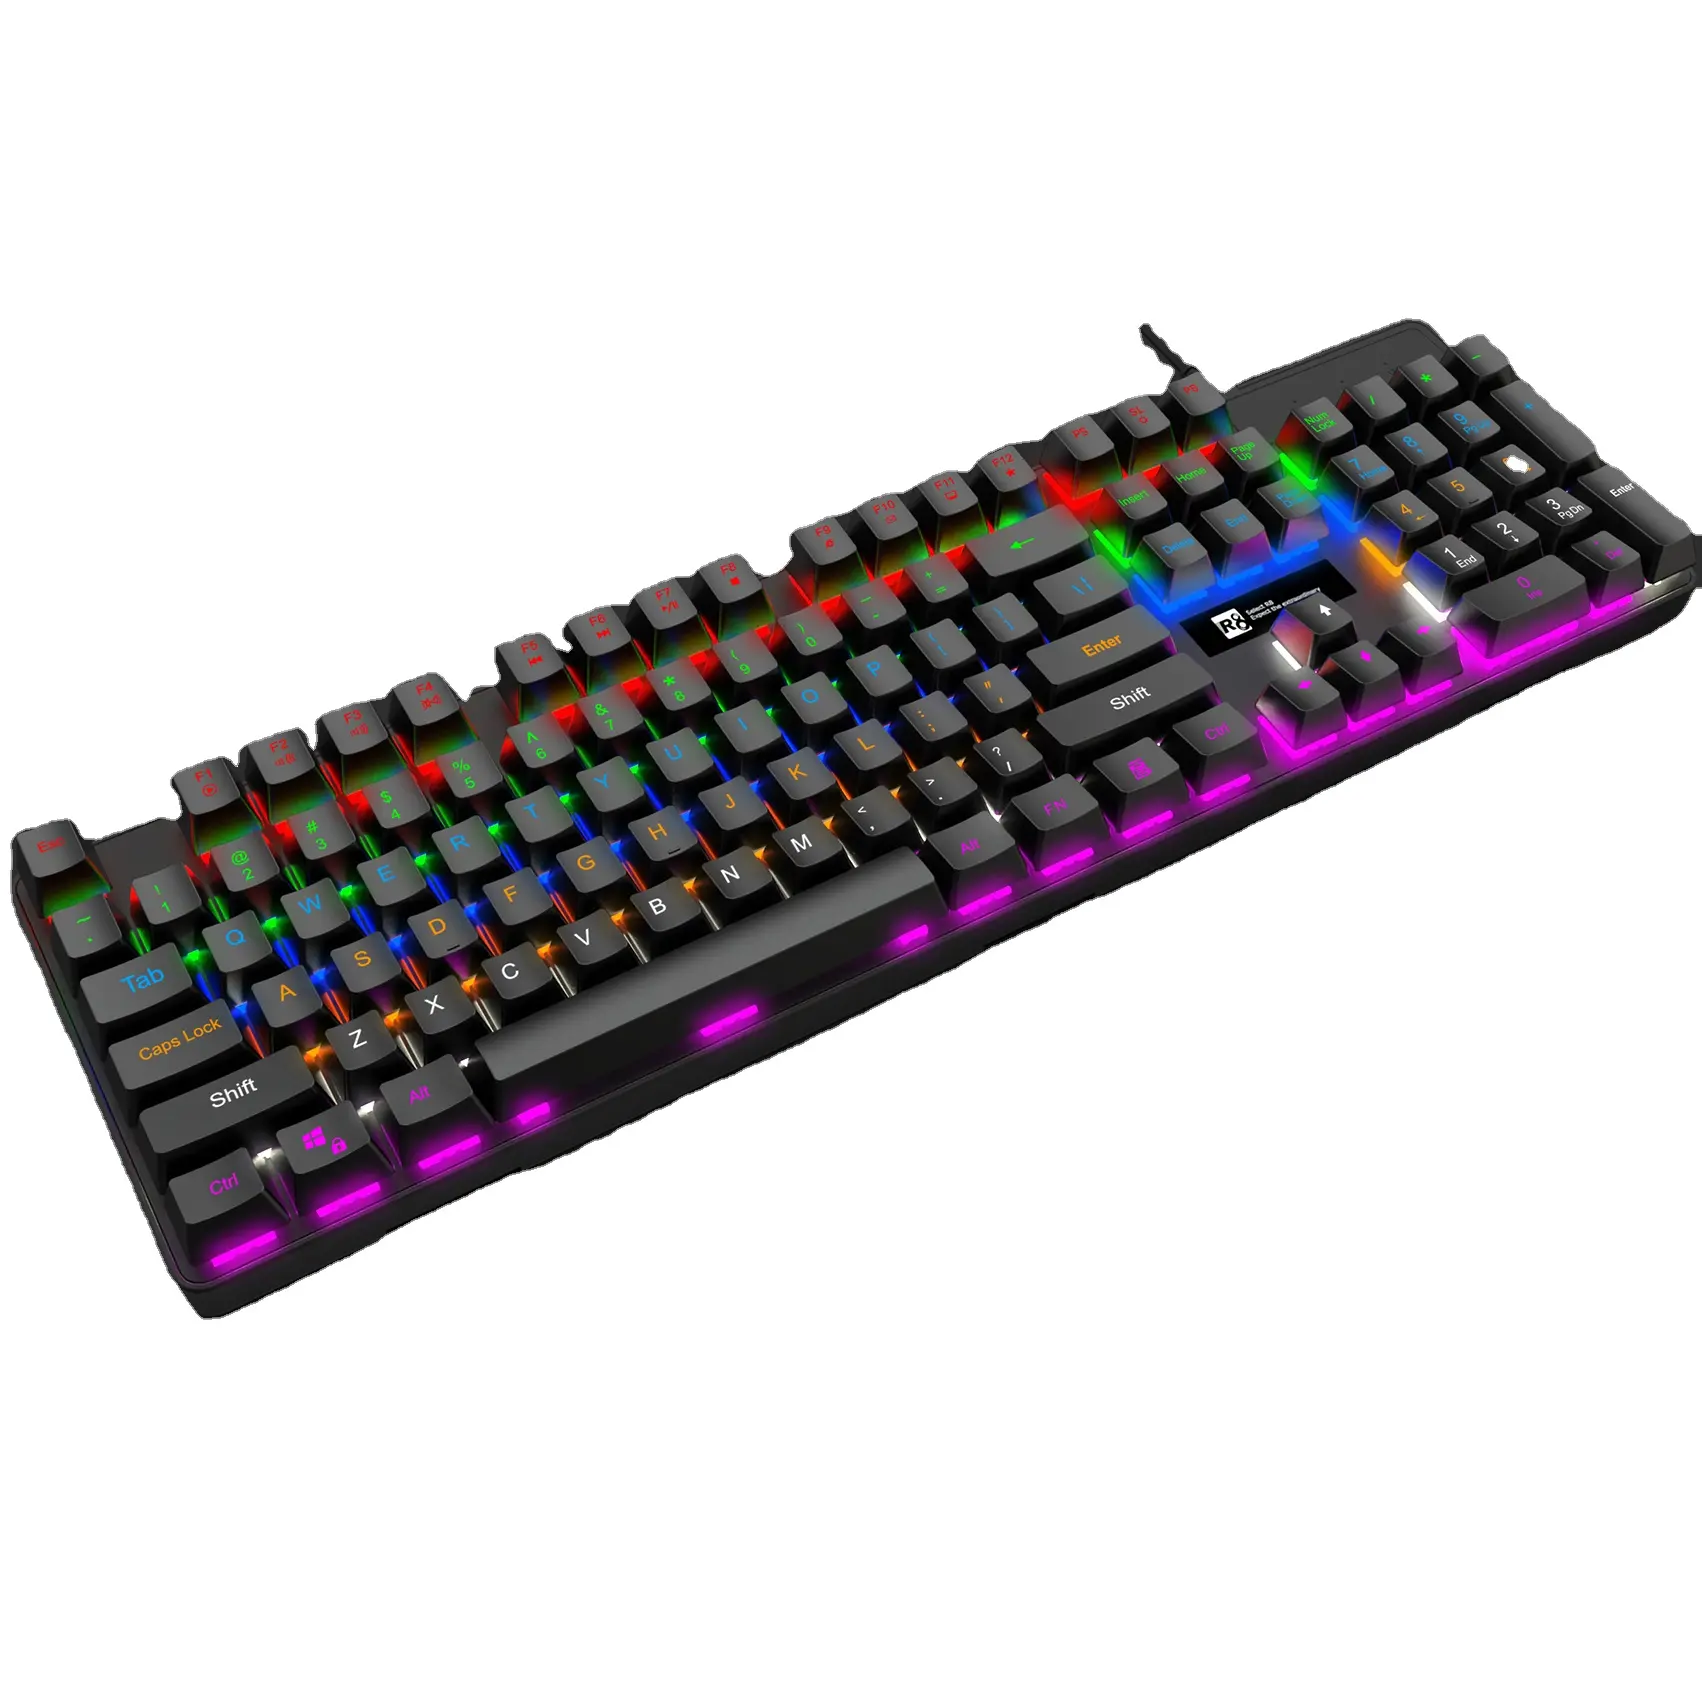 OEM di Marca Nome Player RGB Wired Ergonomia Tastiera Del Computer Gaming con Arcobaleno di Colore Ha Condotto La Luce